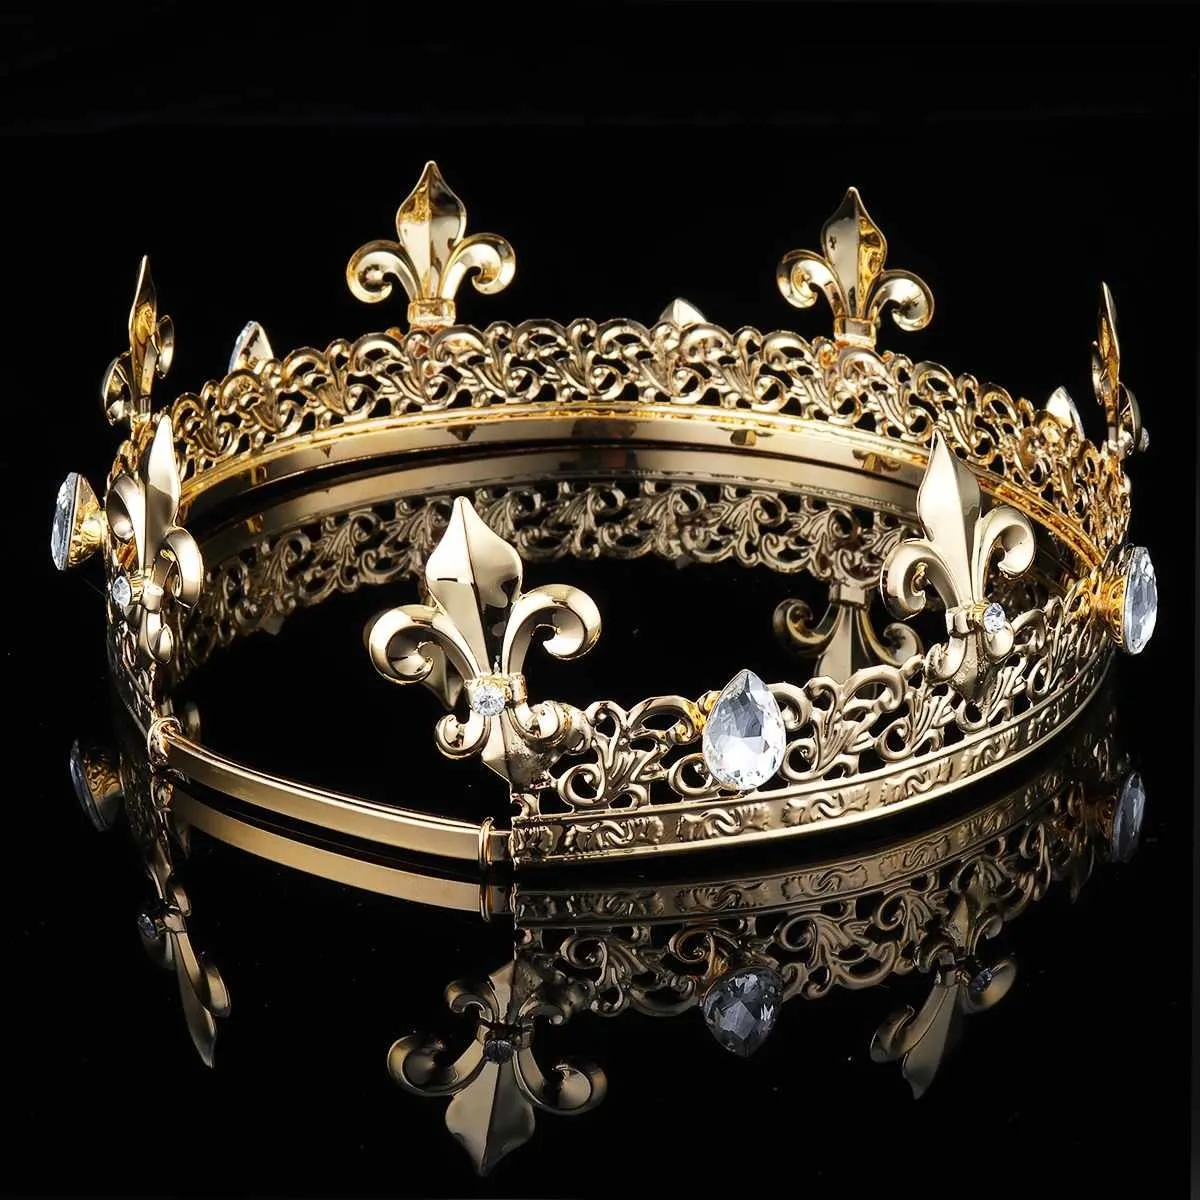 Men039s Imperial Medieval Gold King Couronne ronde complète Tiara Cristal Strass Réglable Fleur De Lis Décor Diadem Party Costum6771200